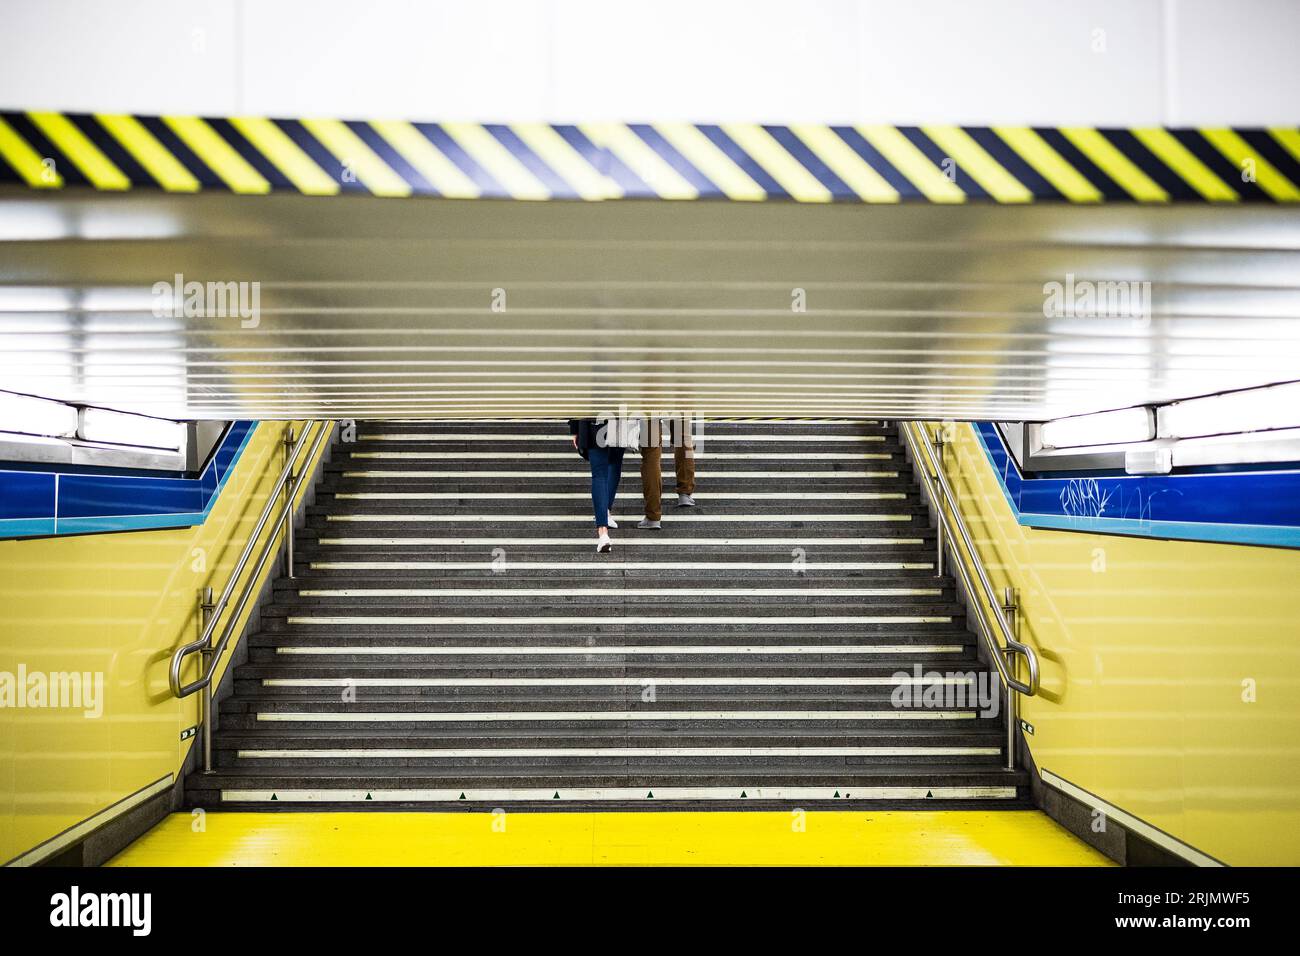 Couple on public transport subway underground train station commute Stock Photo